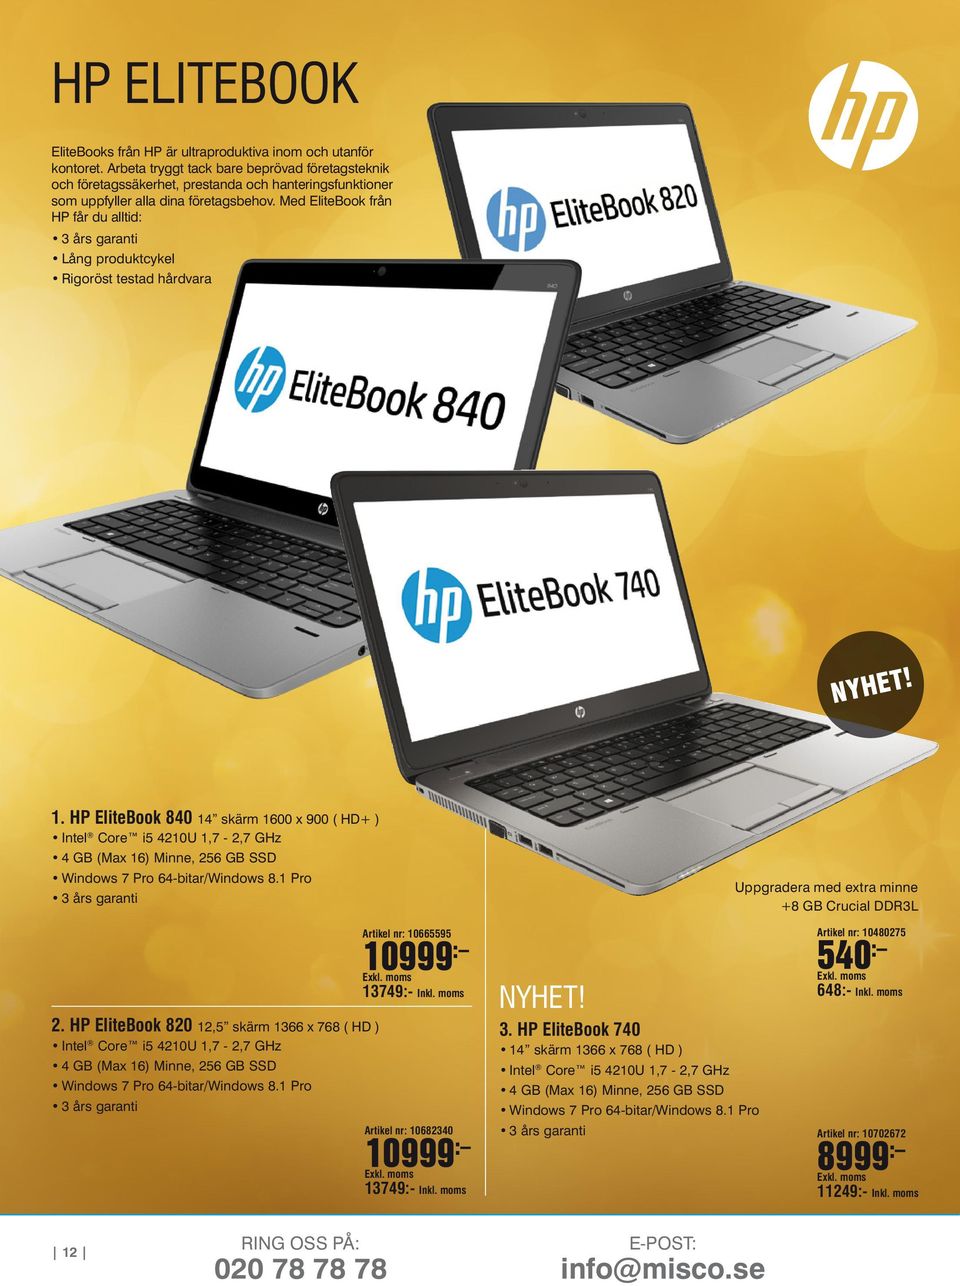 Med EliteBook från HP får du alltid: 3 års garanti Lång produktcykel Rigoröst testad hårdvara NYHET! 1.